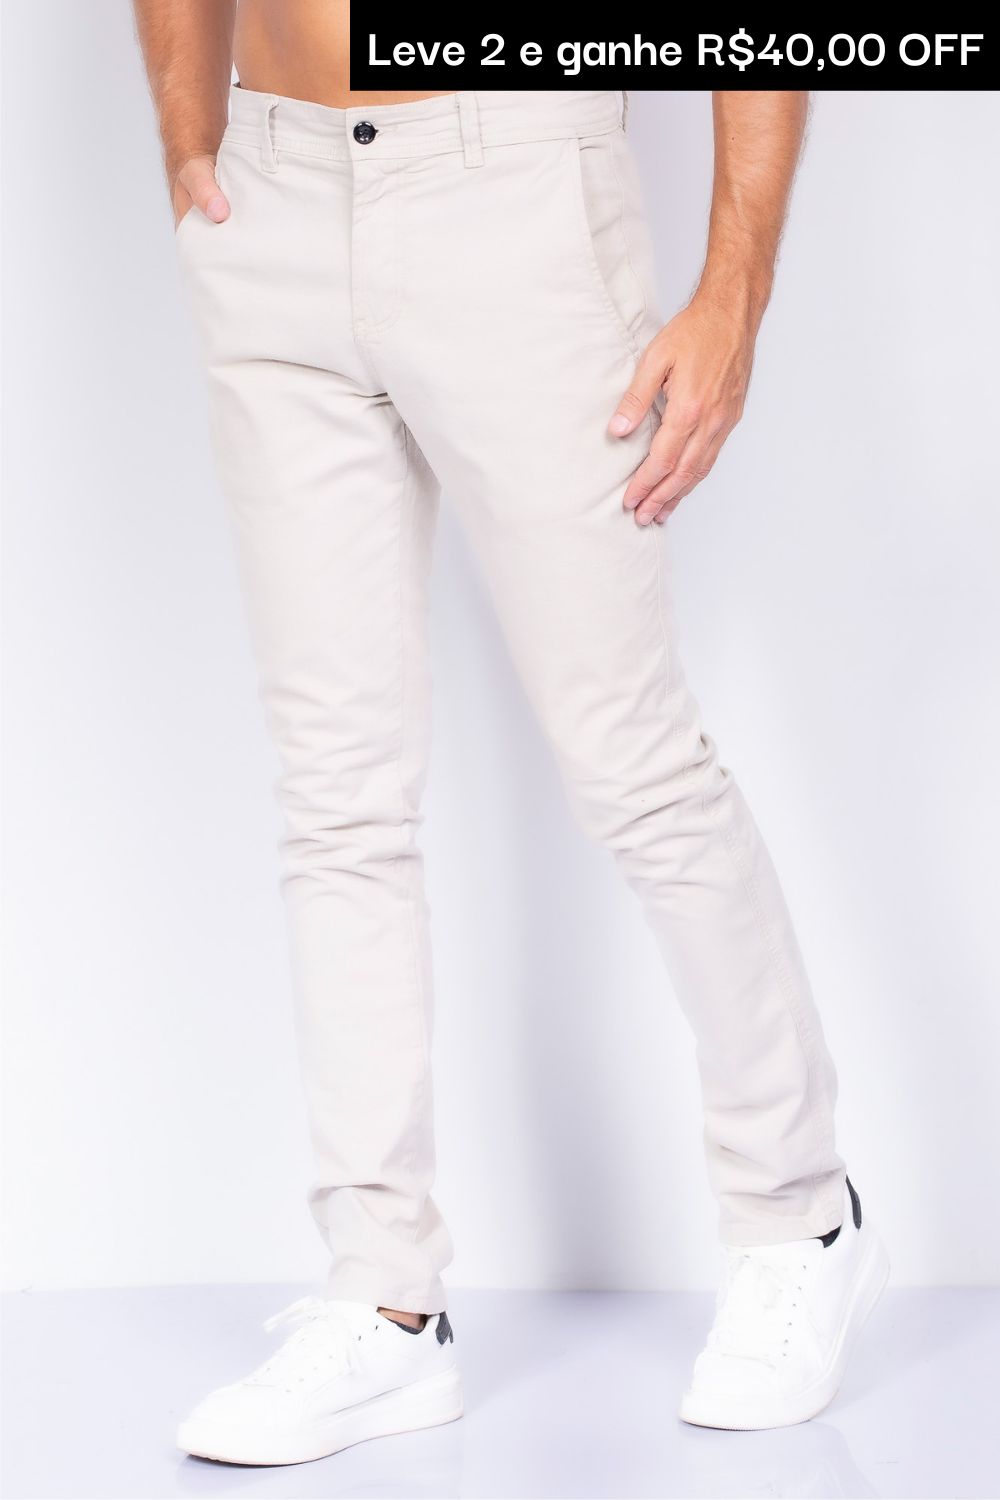 KIT 2x calça chino de sarja - Apenas R$199,90 cada